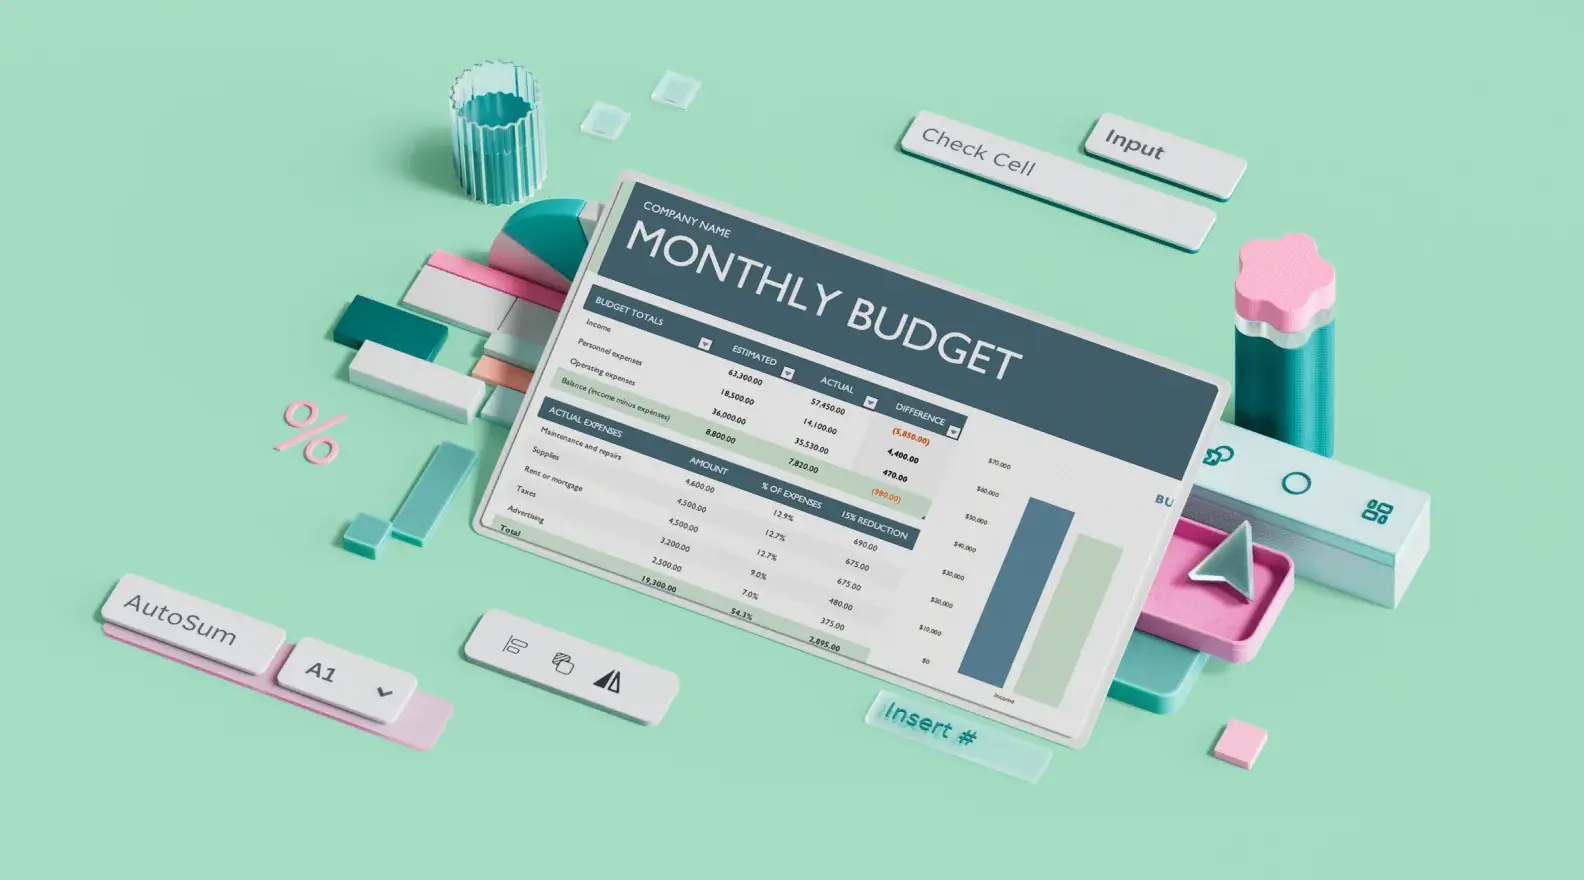 Šablona měsíčního firemního rozpočtu v Microsoft Excelu obklopená prvky 3D návrhu